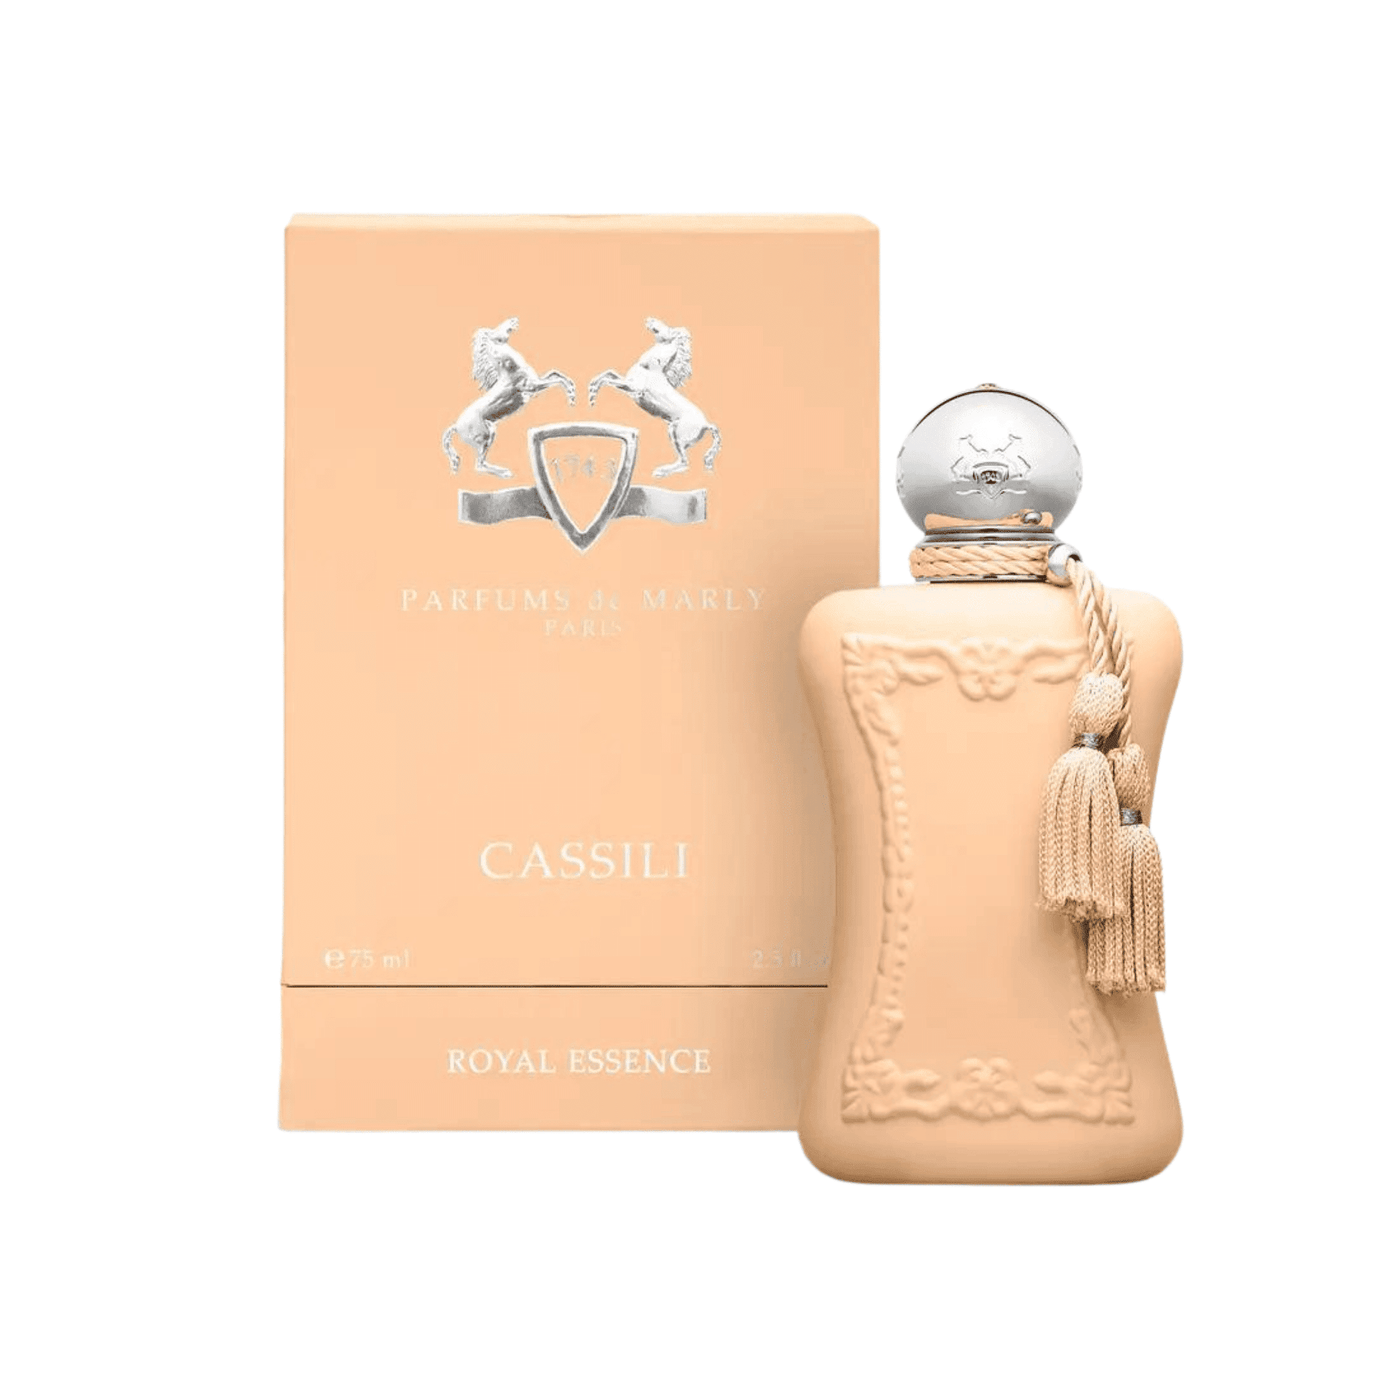 Cassili Parfum de Marly